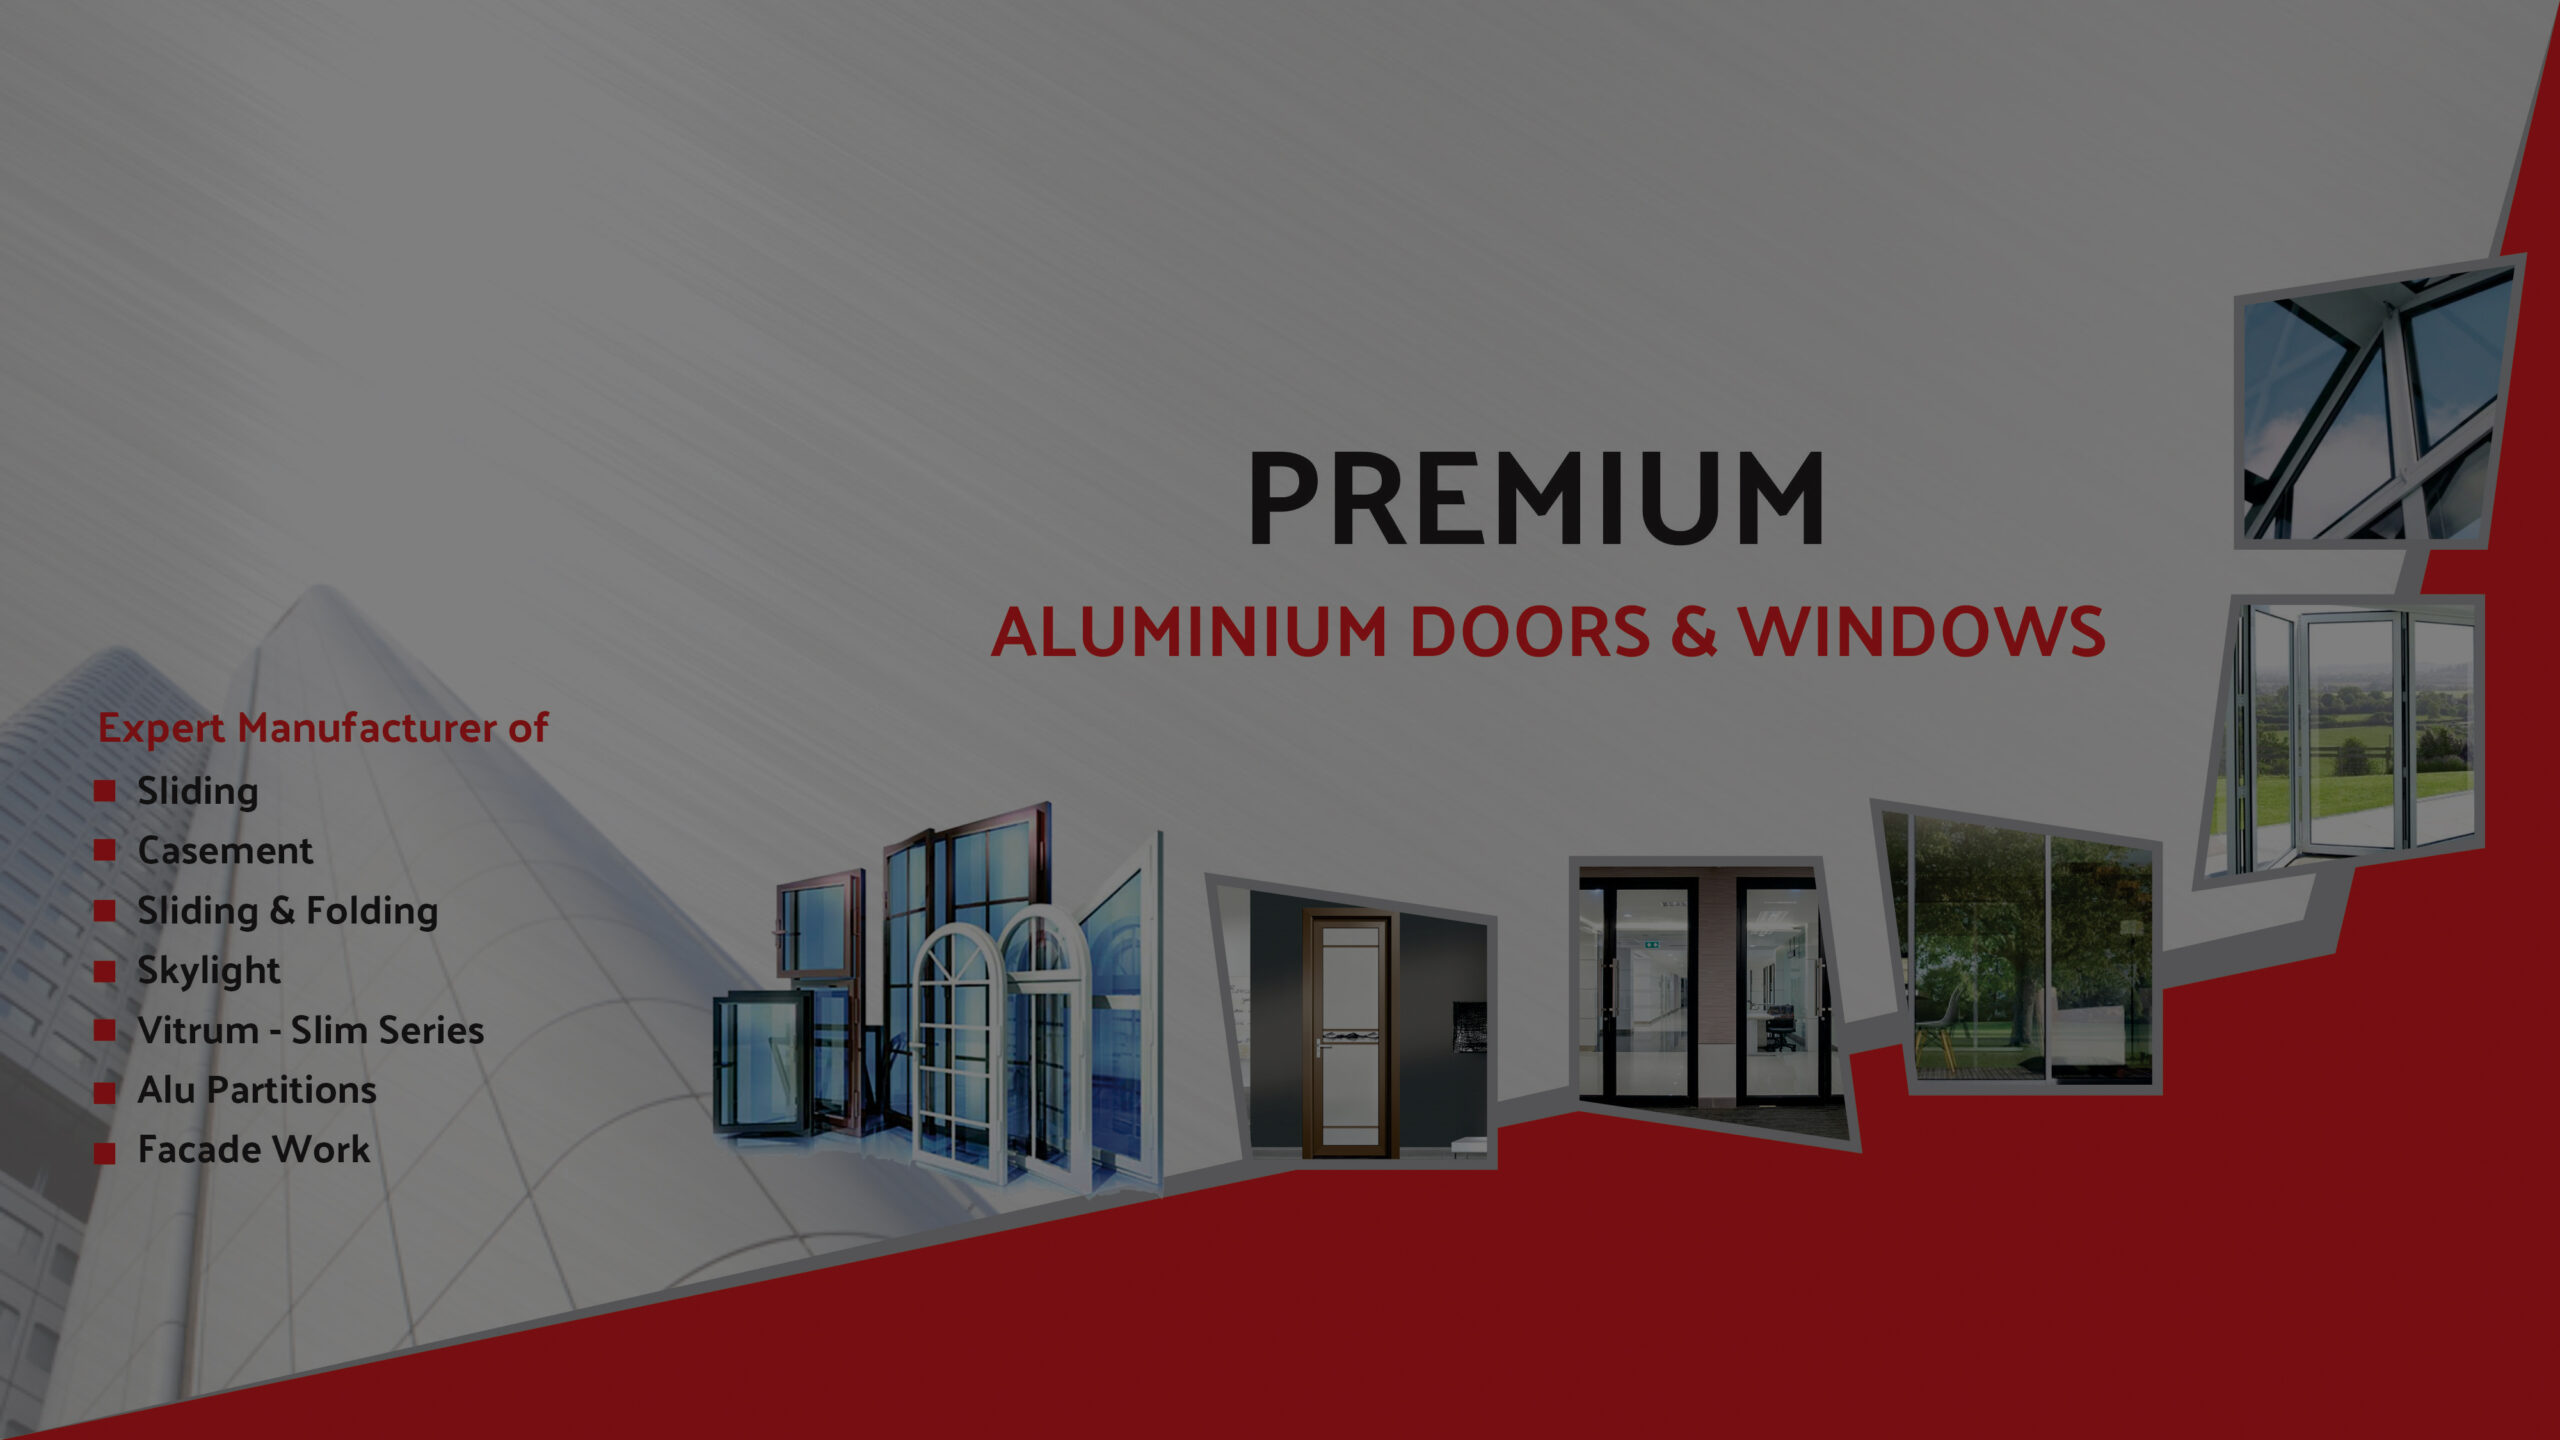 Premium Aluminum Doors & Windows